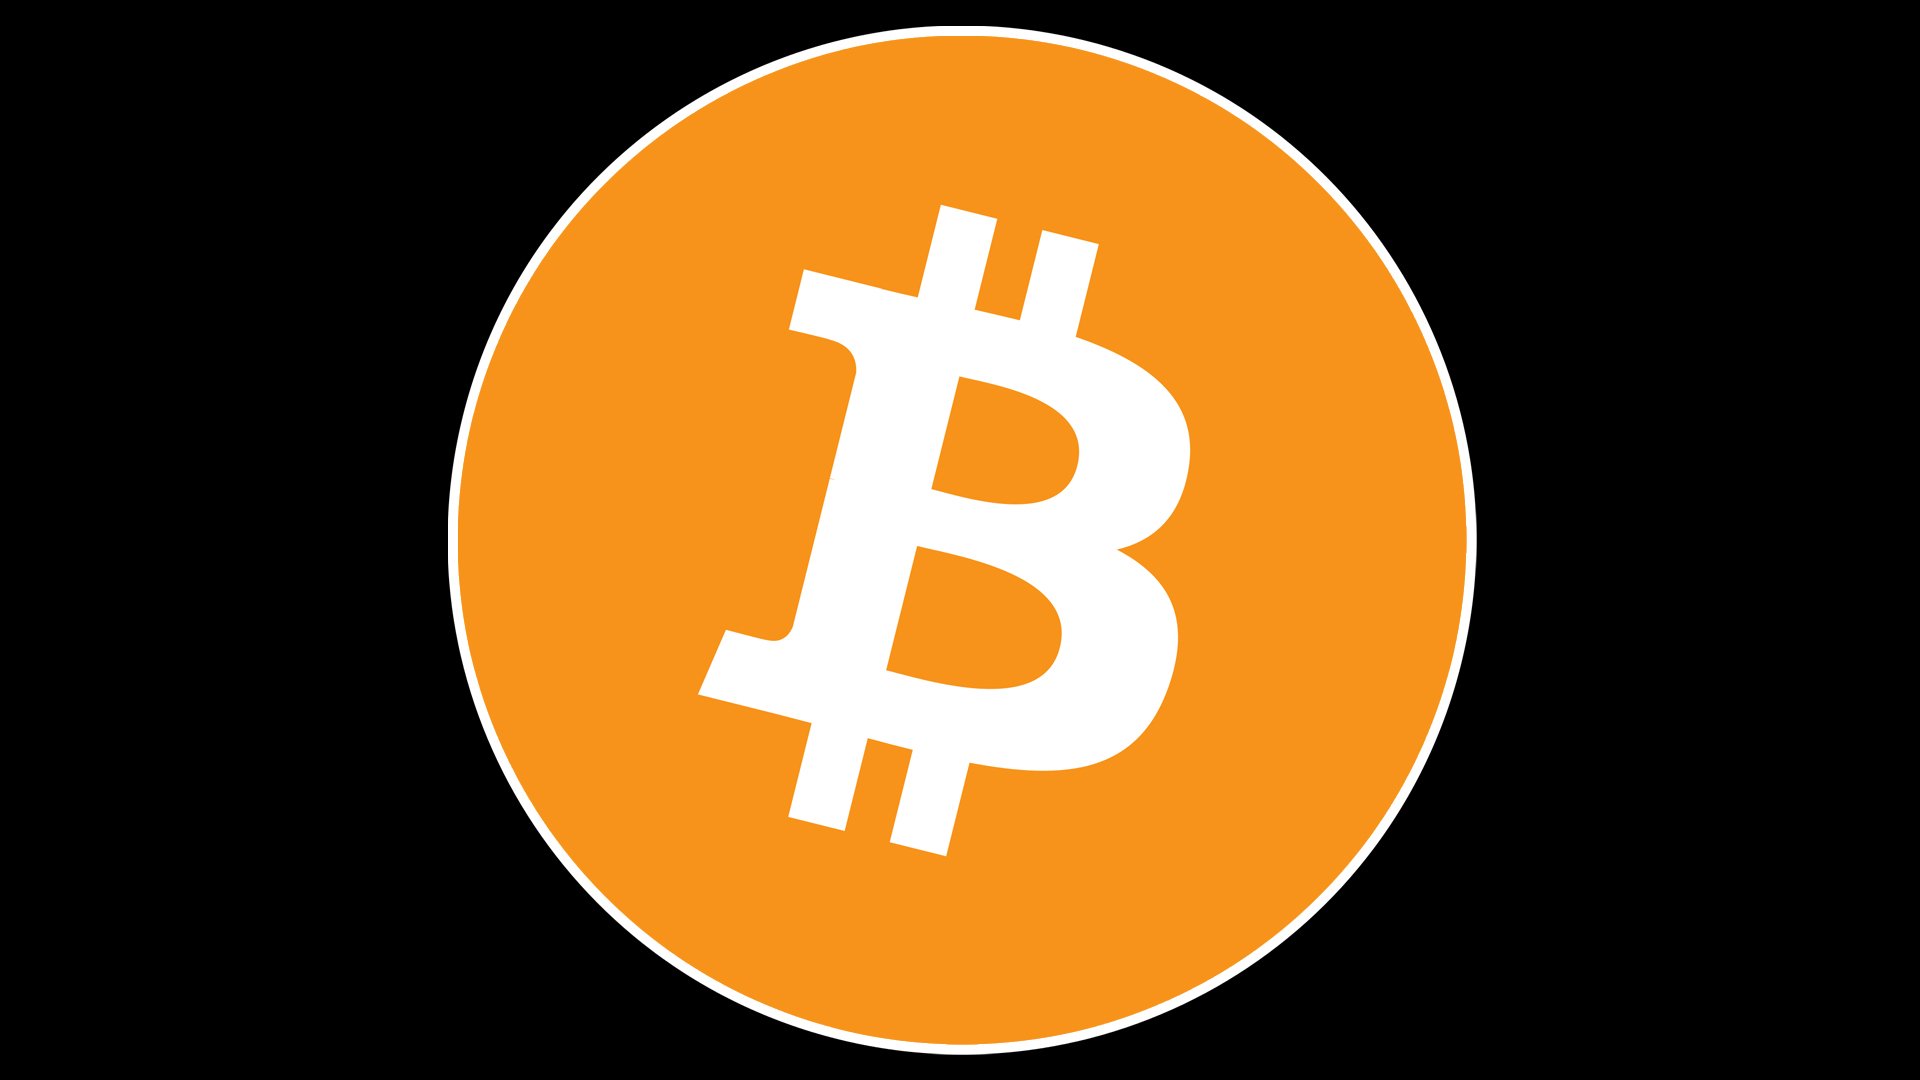 pluto bitcoin trading python bitcoin wallet